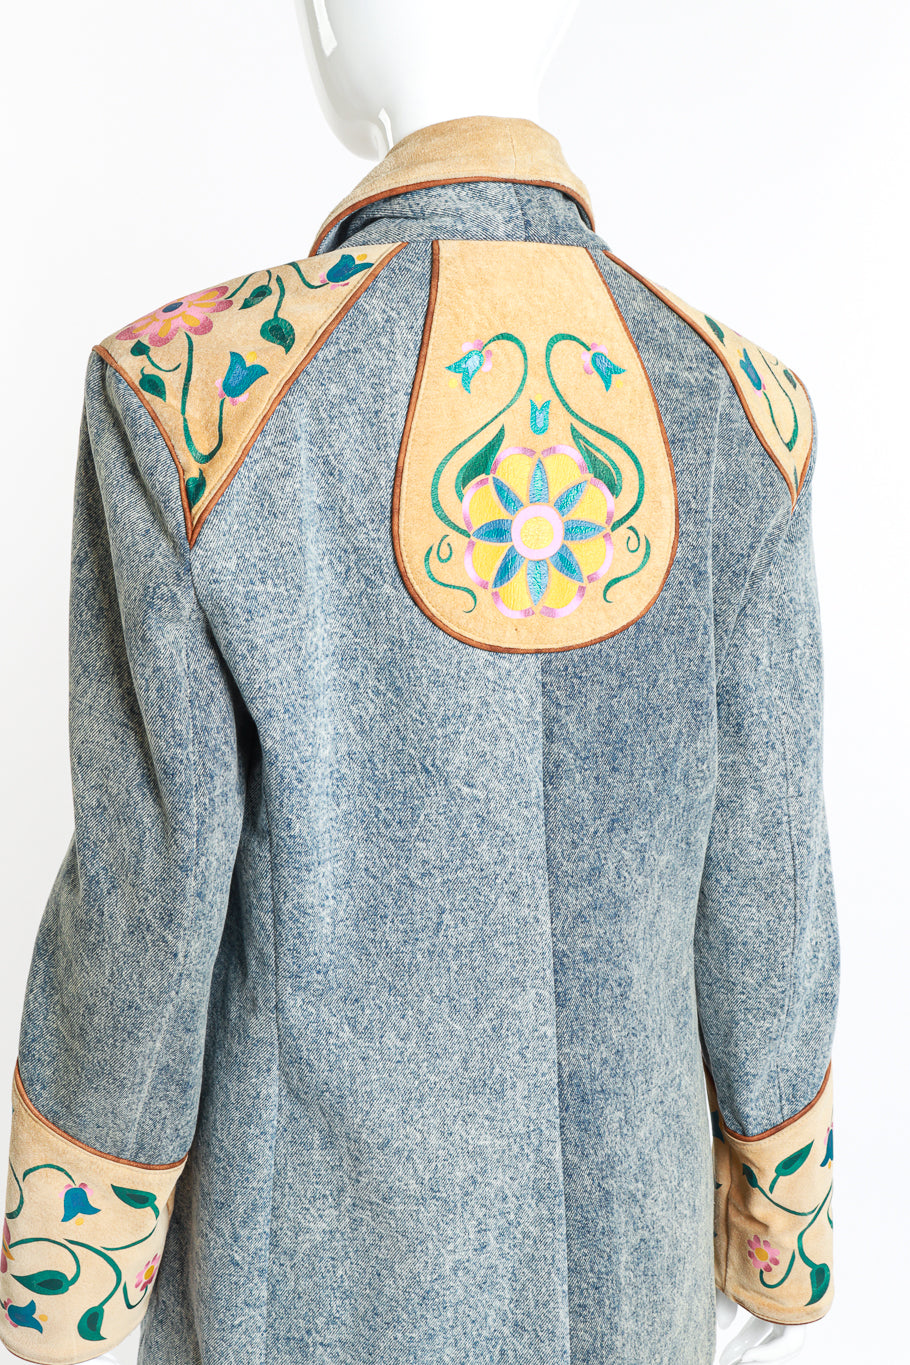 Vintage Char Floral Painted Denim & Suede Jacket back on mannequin closeup @recess la